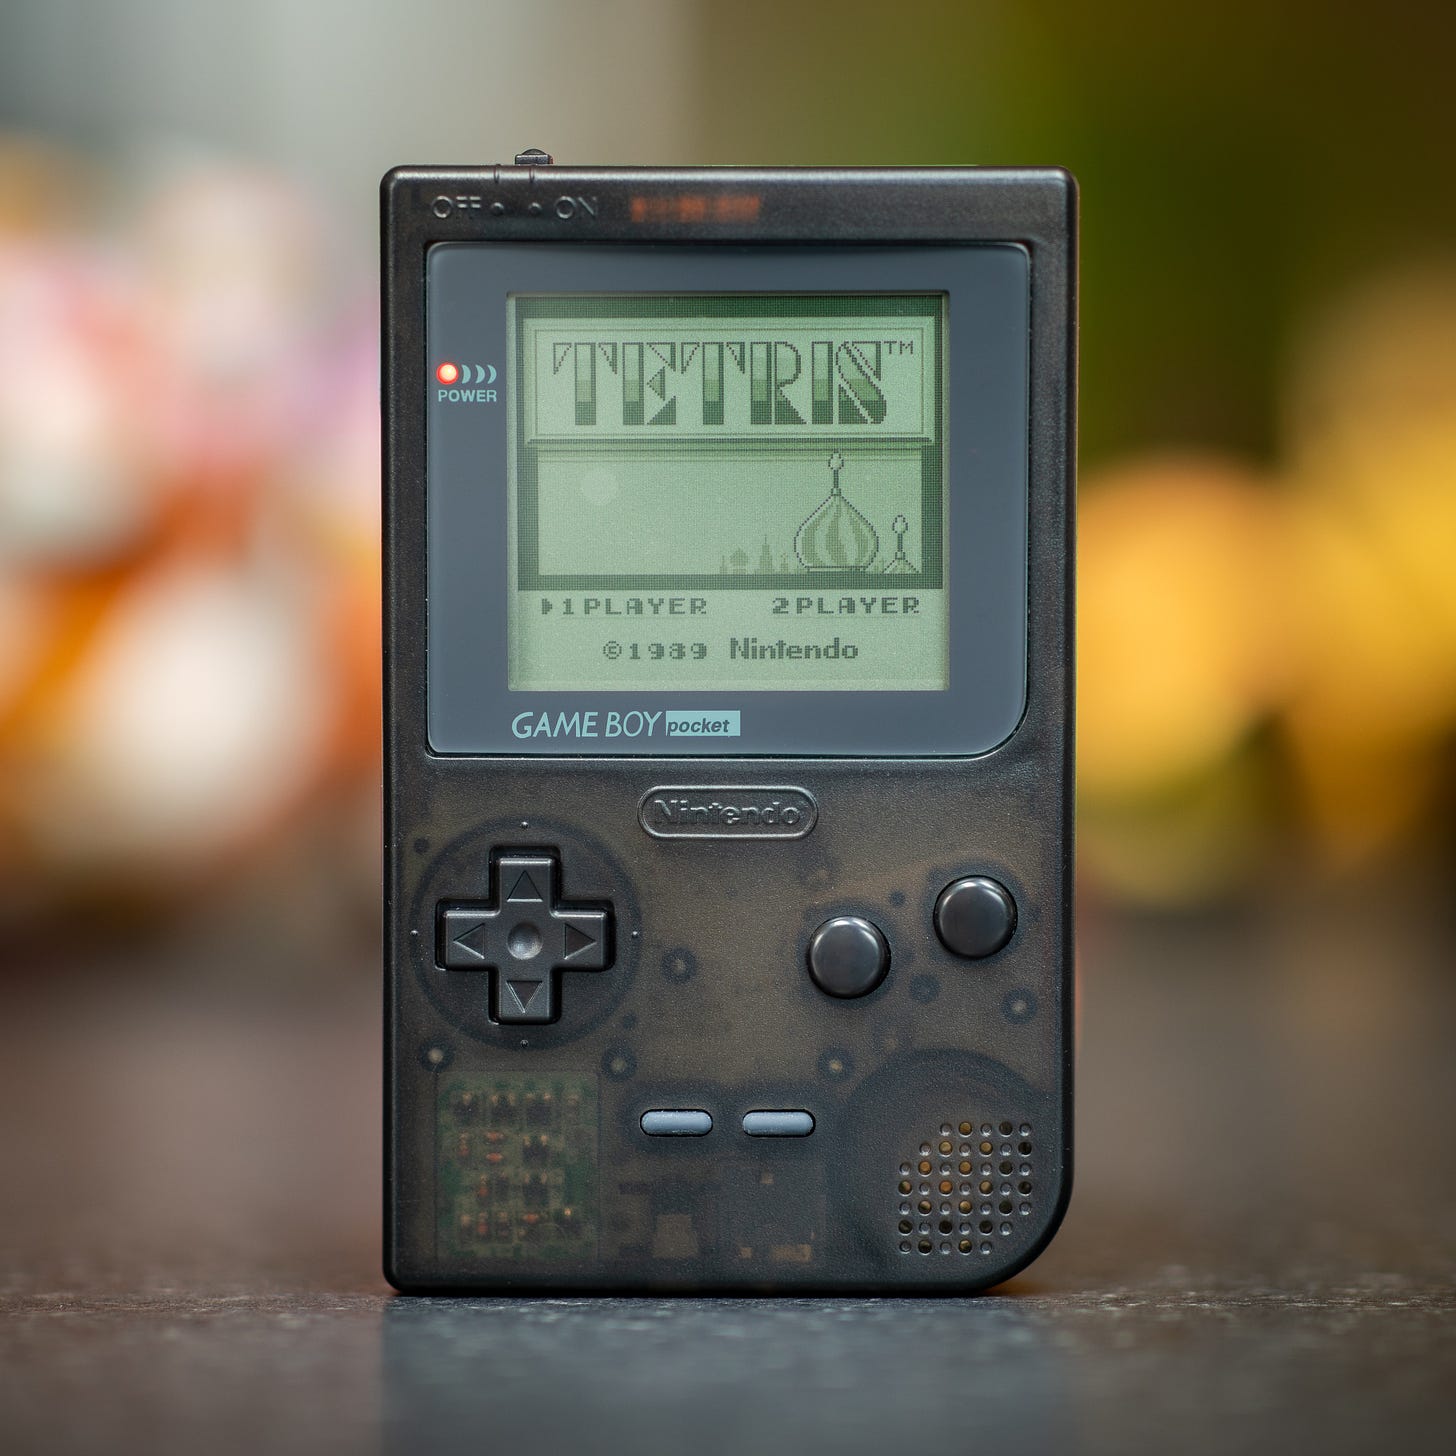 Nintendo GameBoy Pocket displaying Tetris